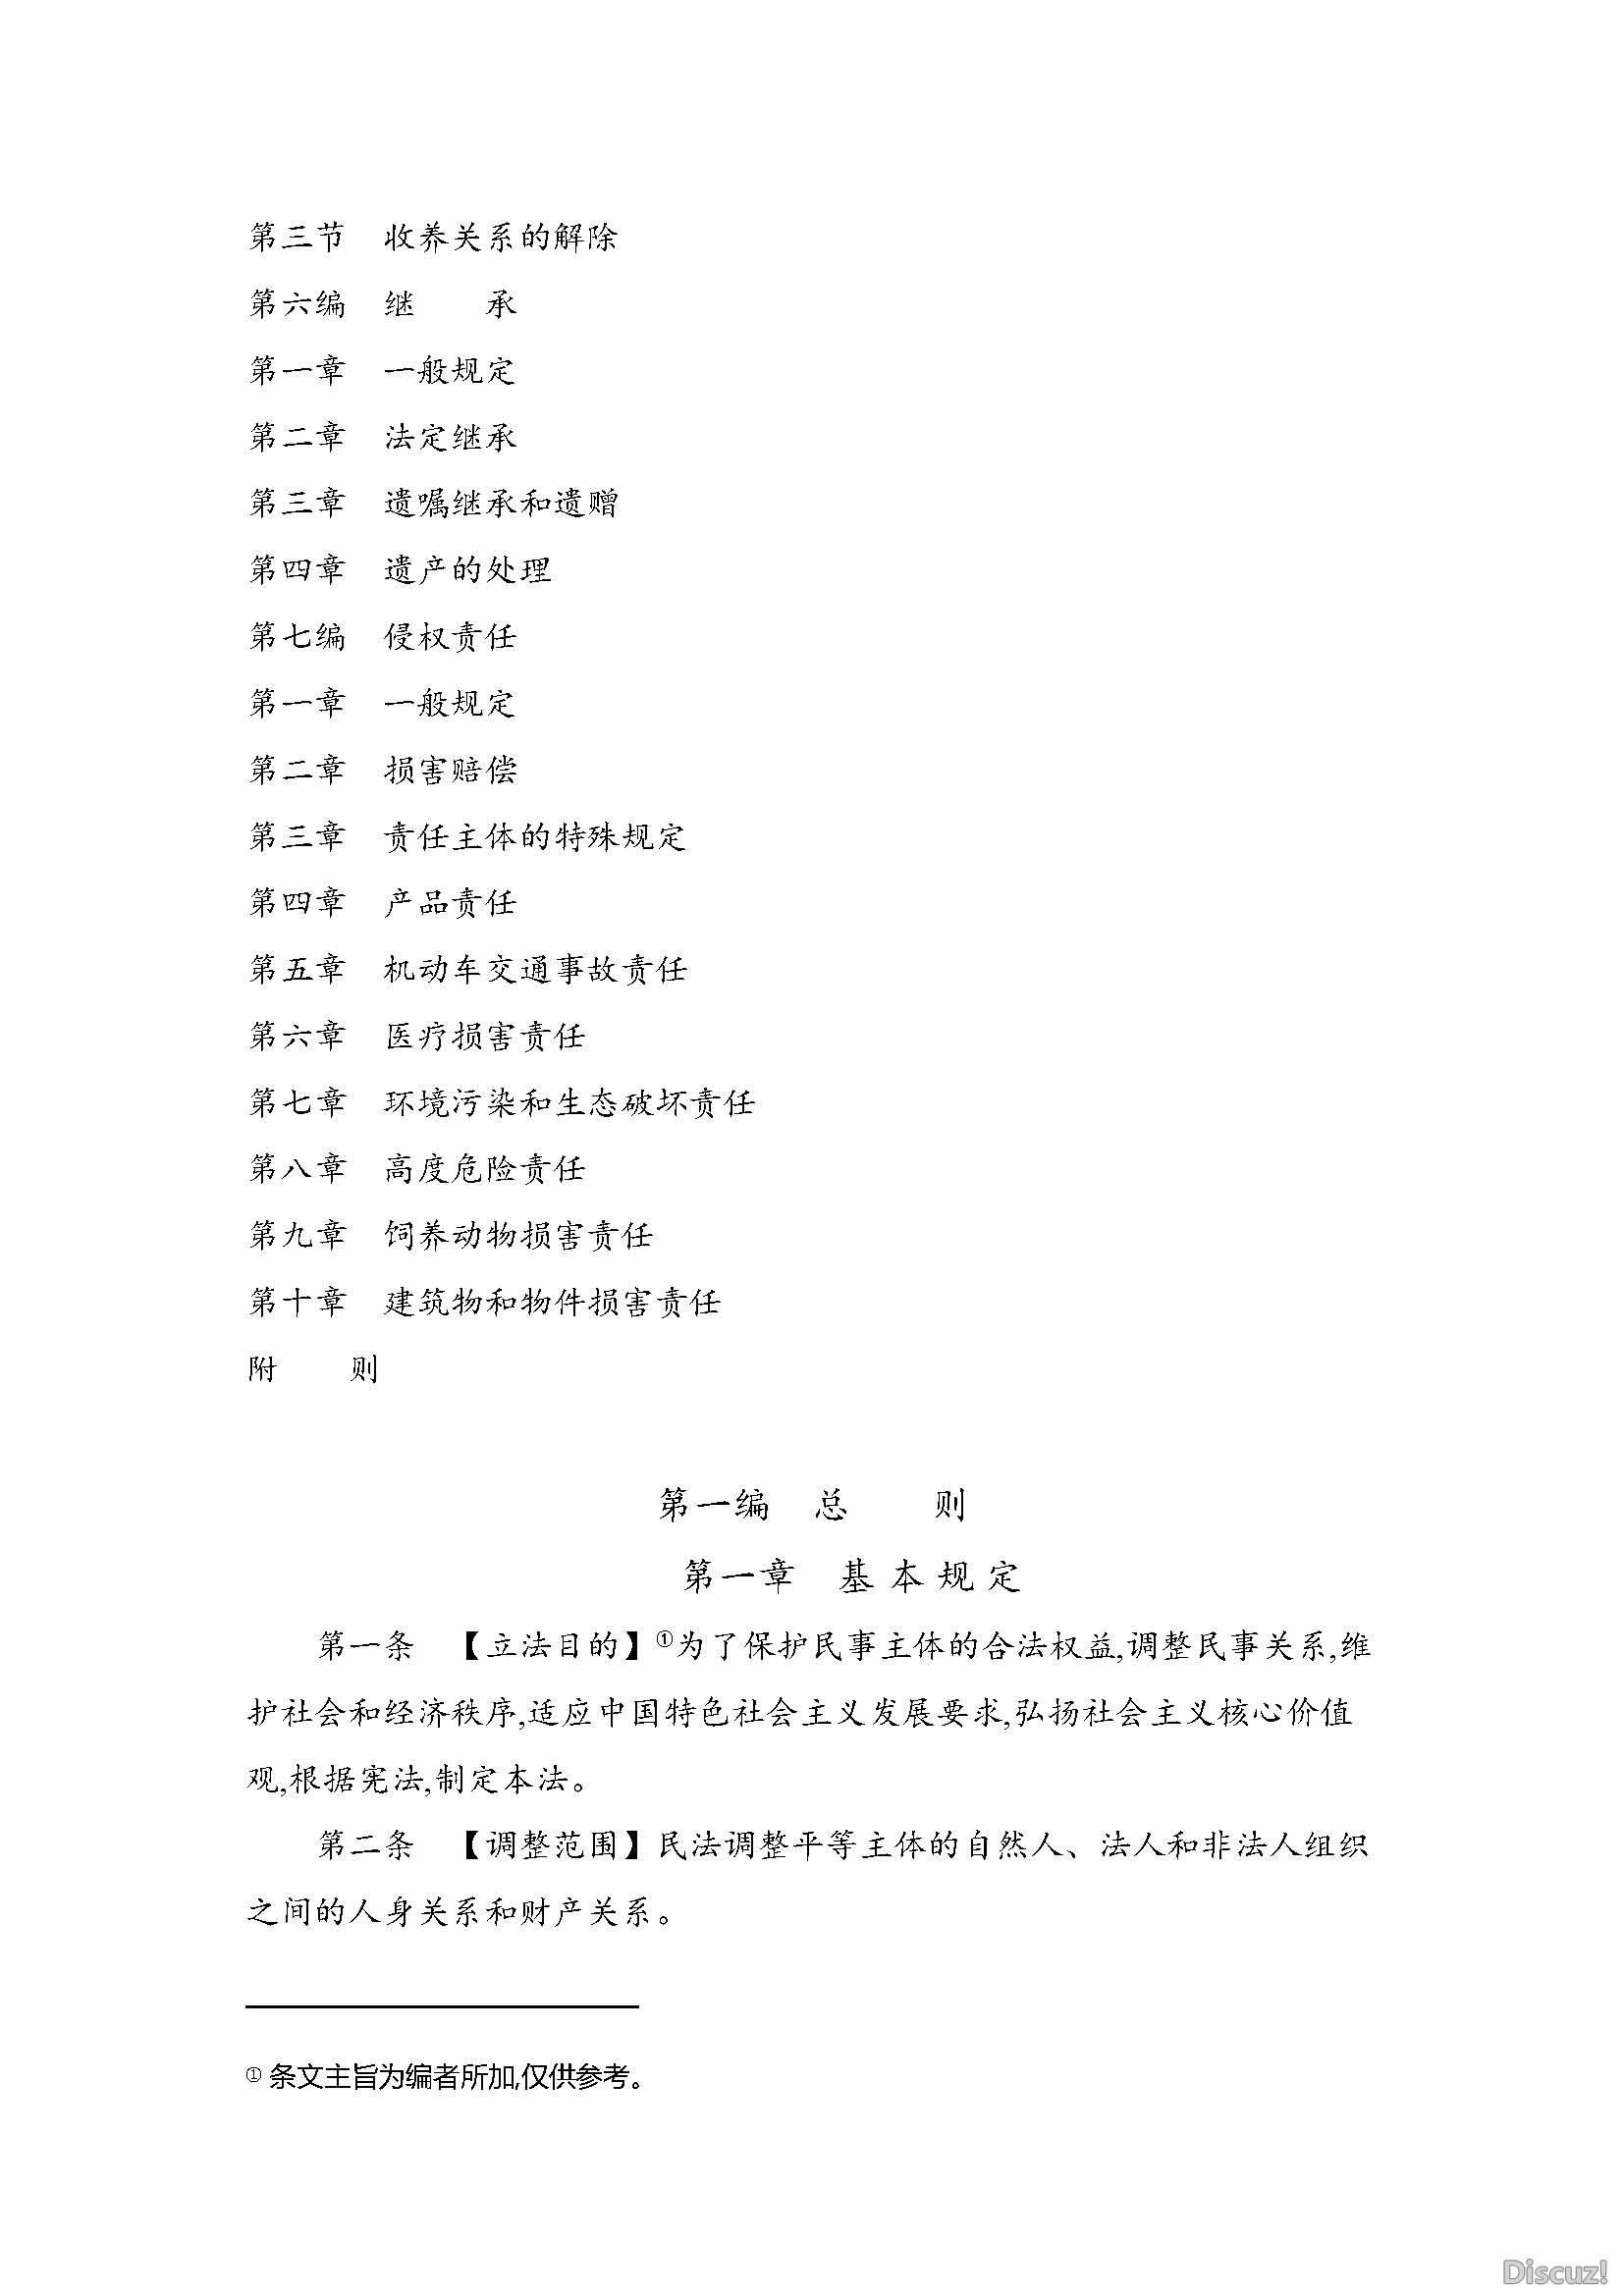 中华人民共和国民法典2020_页面_006.jpg